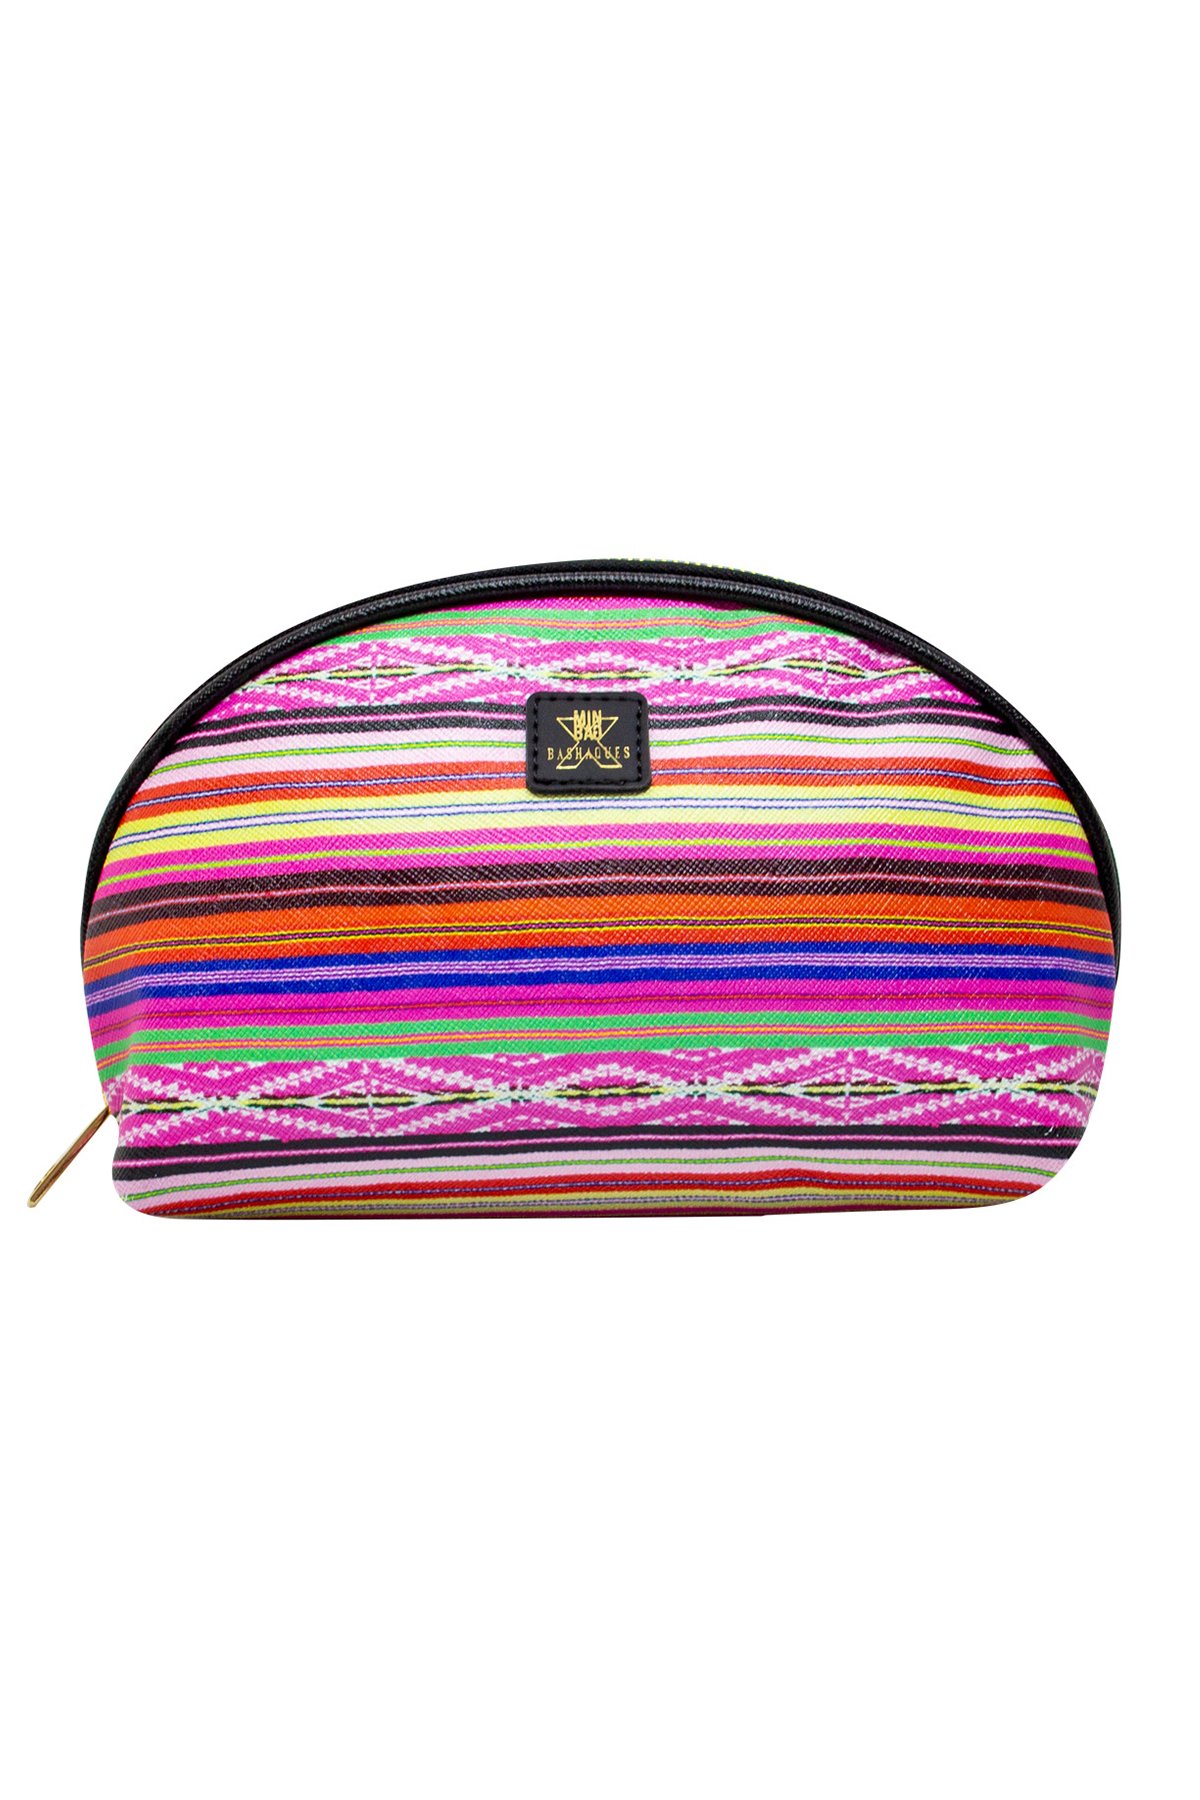 Bashaques x Minbag Makeup Bag (Peruvian Poncho)